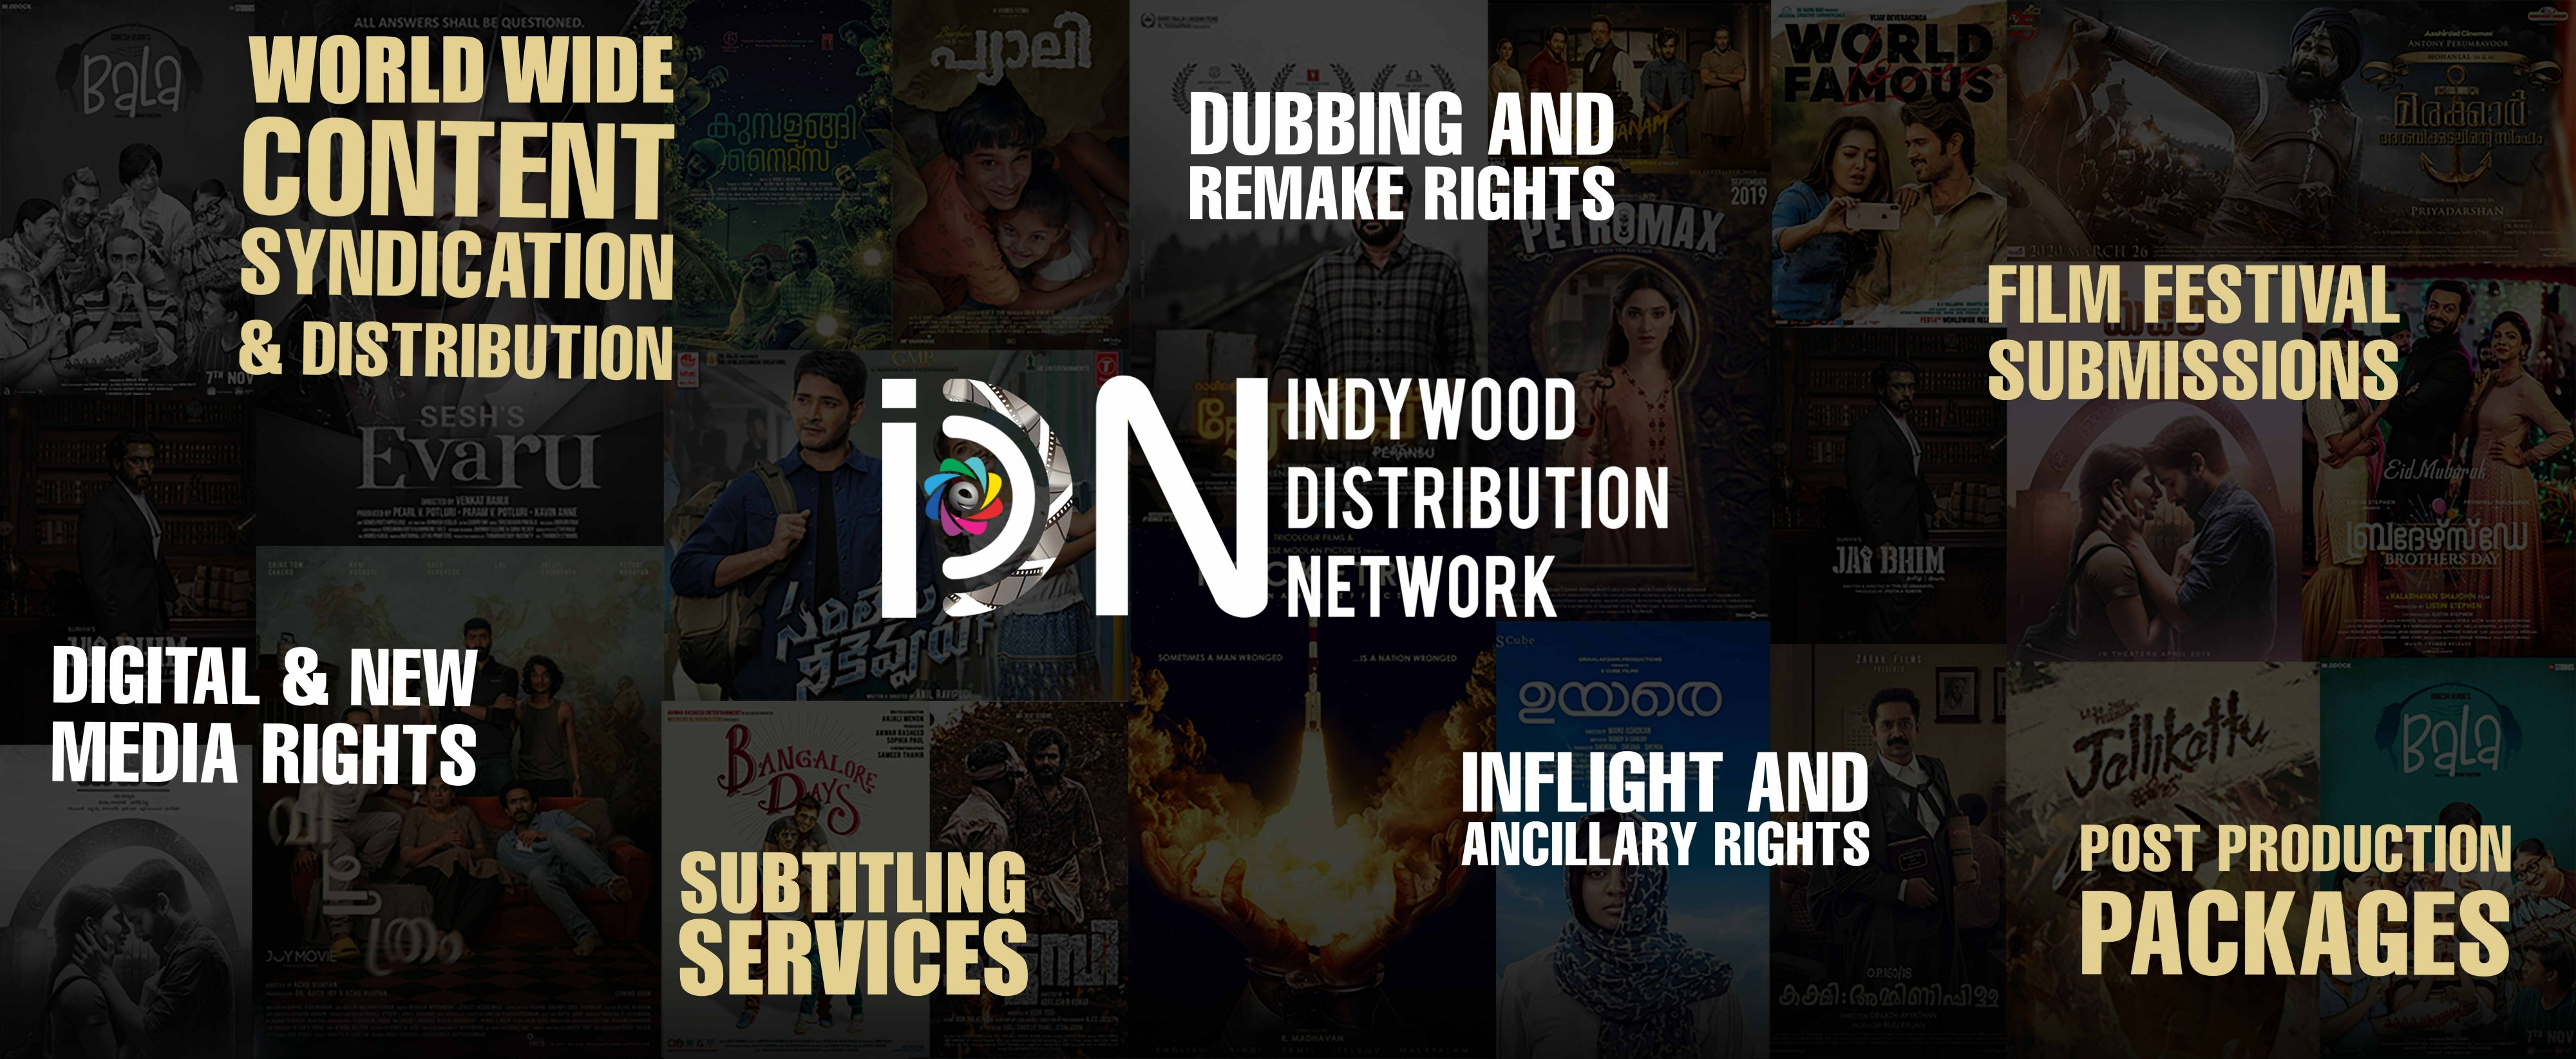 Indywood Distribution Network 